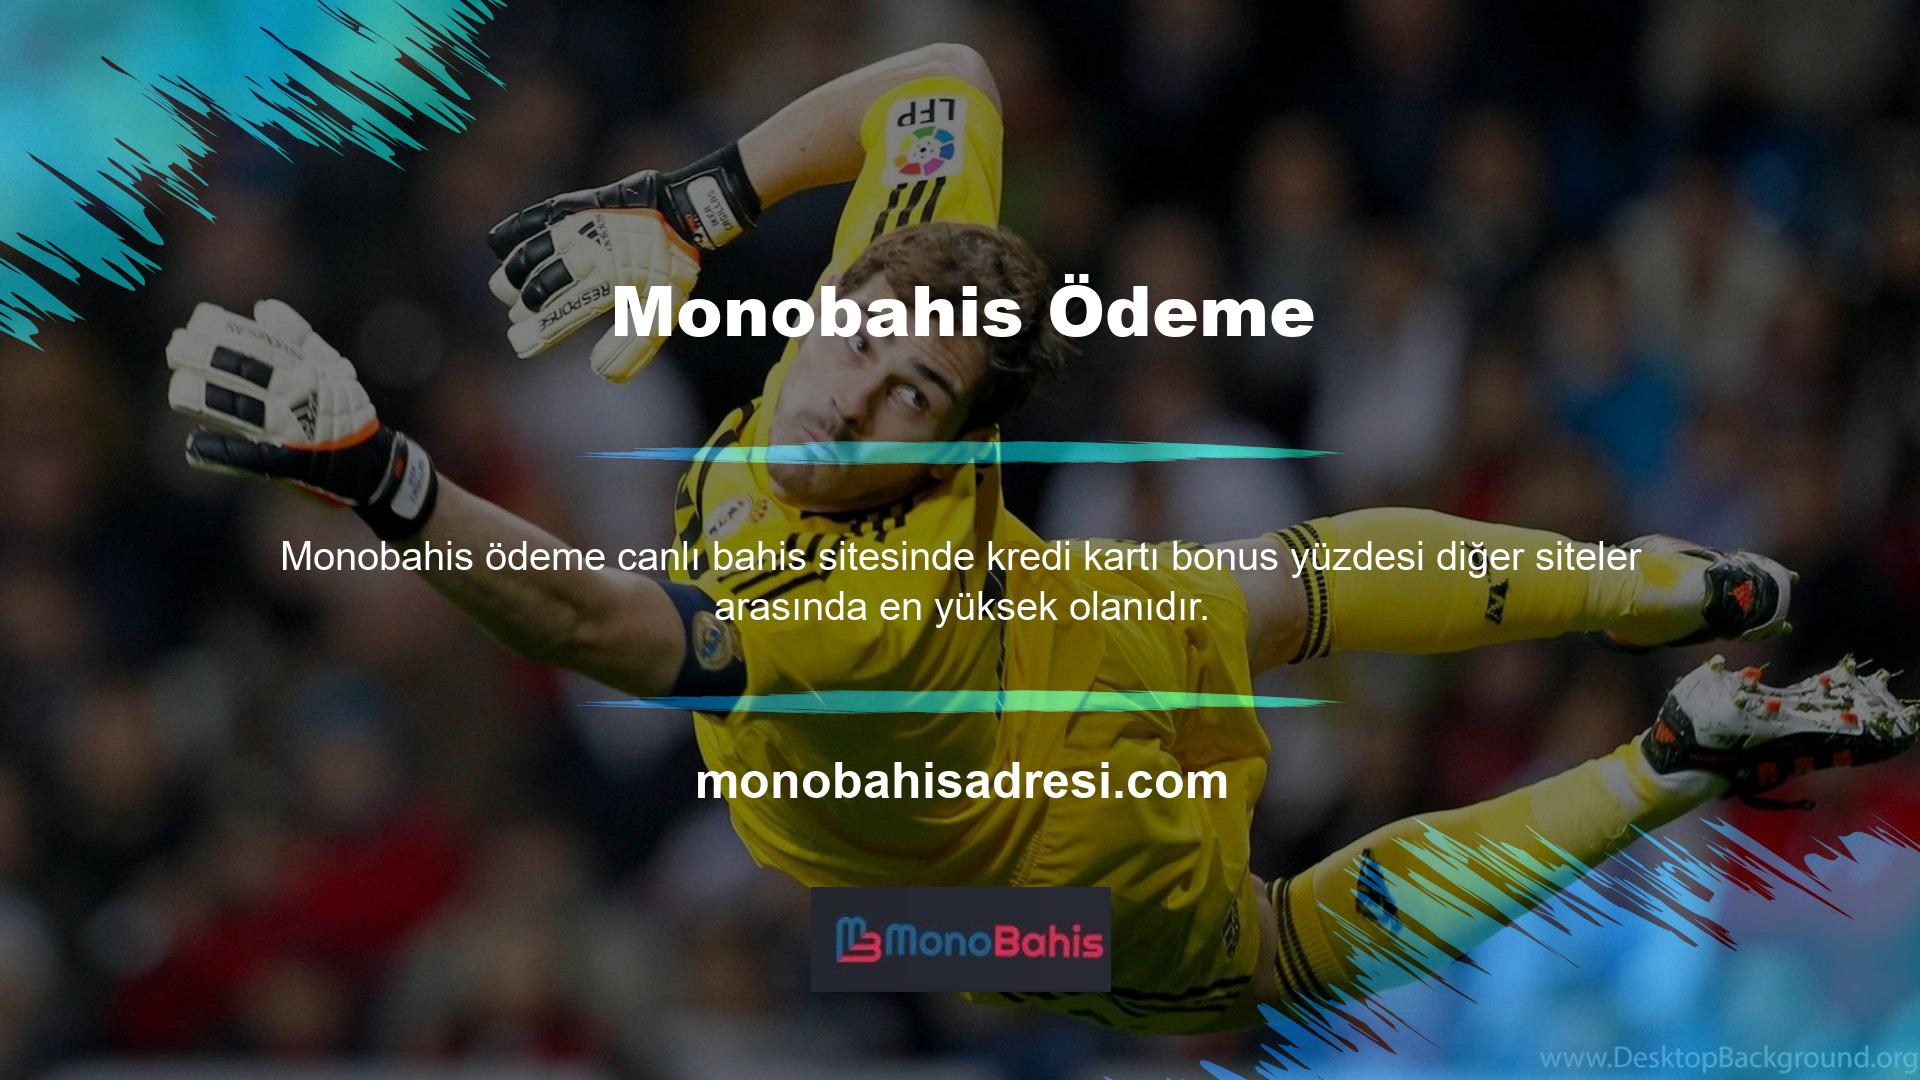 Online Monobahis sitesine üye olup kredi kartınıza yatırım yaparak anında bonus kazanabilirsiniz